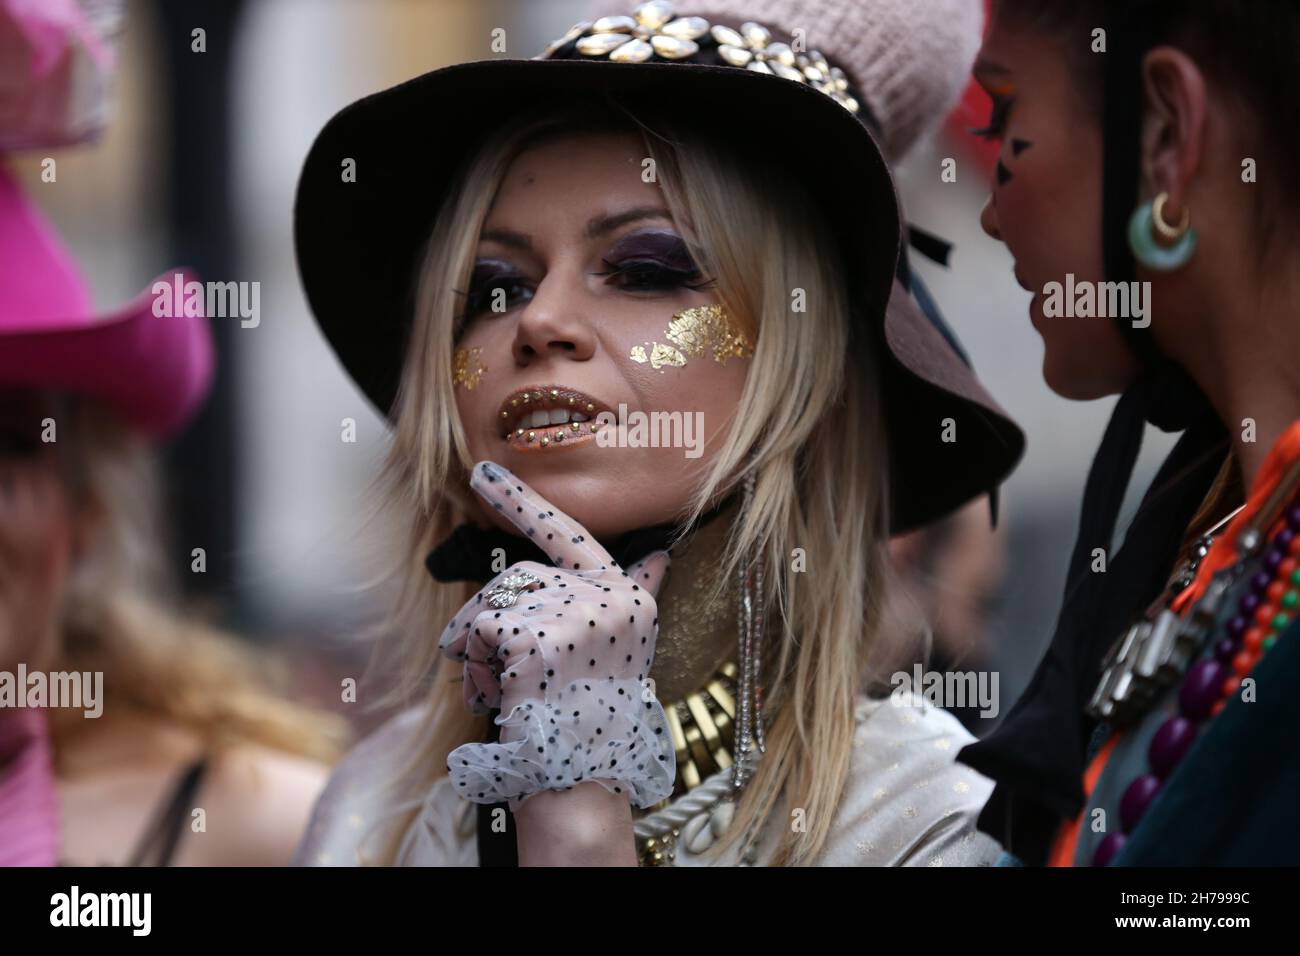 A Models espone la collezione di Pierre Garroudi durante la sfilata di moda flash mob a Londra, Regno Unito Foto Stock